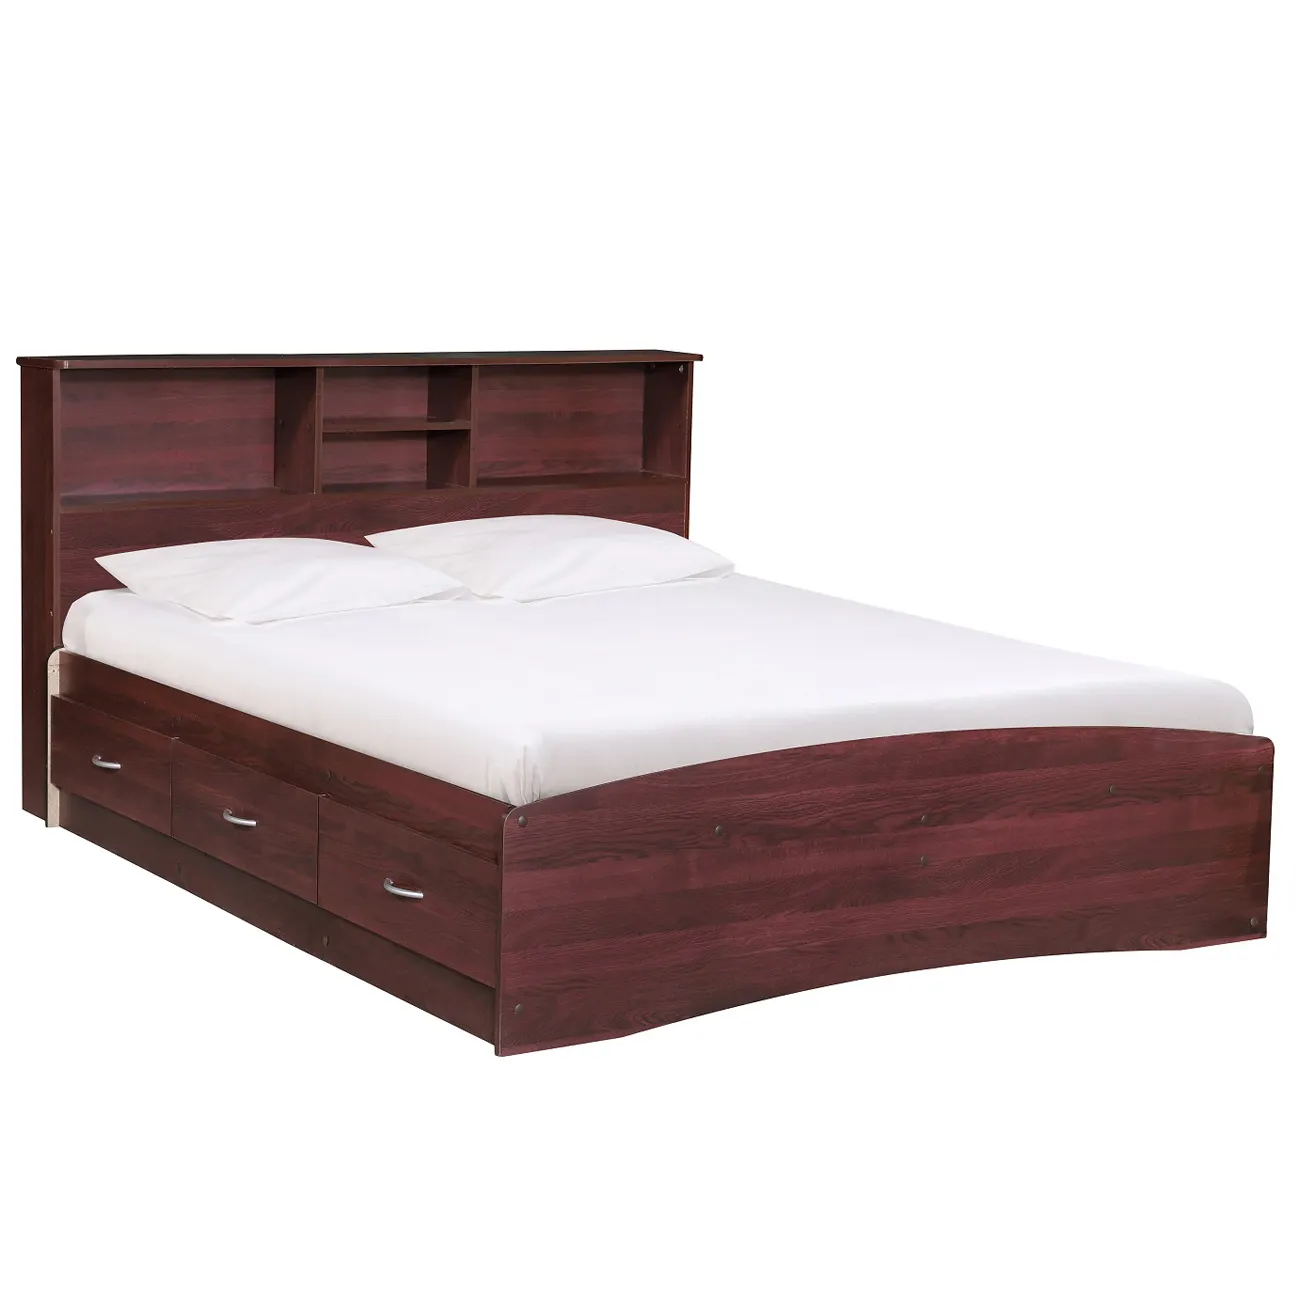 पूर्ण लकड़ी के बिस्तर फ्रेम चारपाई की अगली पीठ के साथ आते हैं और 3 दराज मलेशिया में किए गए 2213